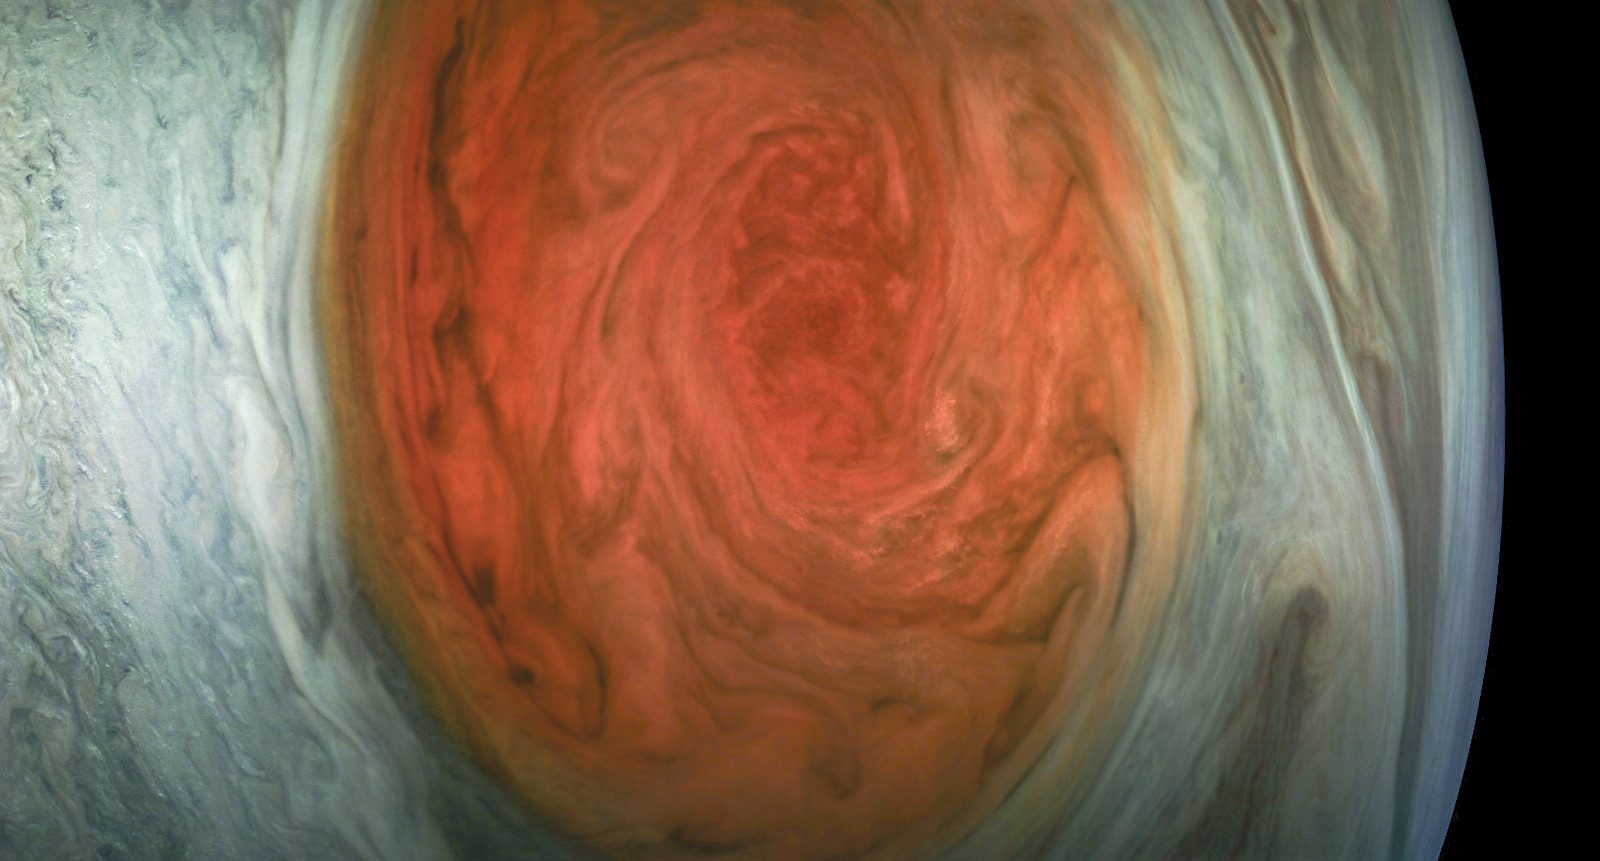 NASA - Jupiter's Great Red Spot